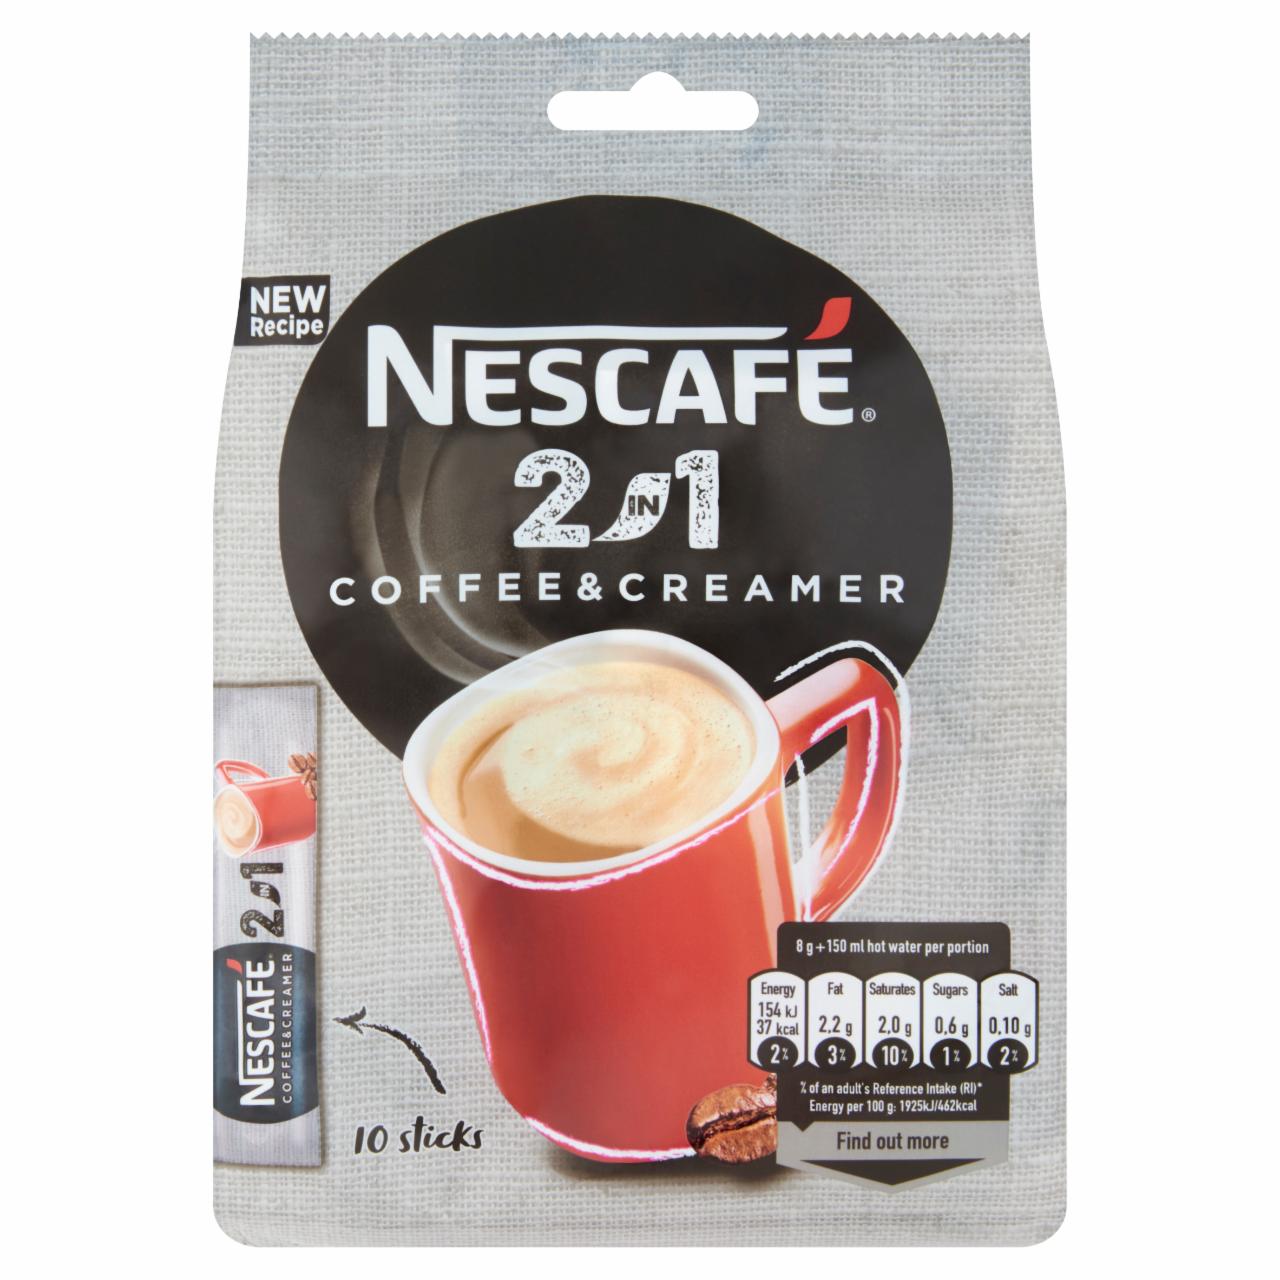 Képek - Nescafé 2in1 azonnal oldódó kávéspecialitás 10 x 8 g (80 g)